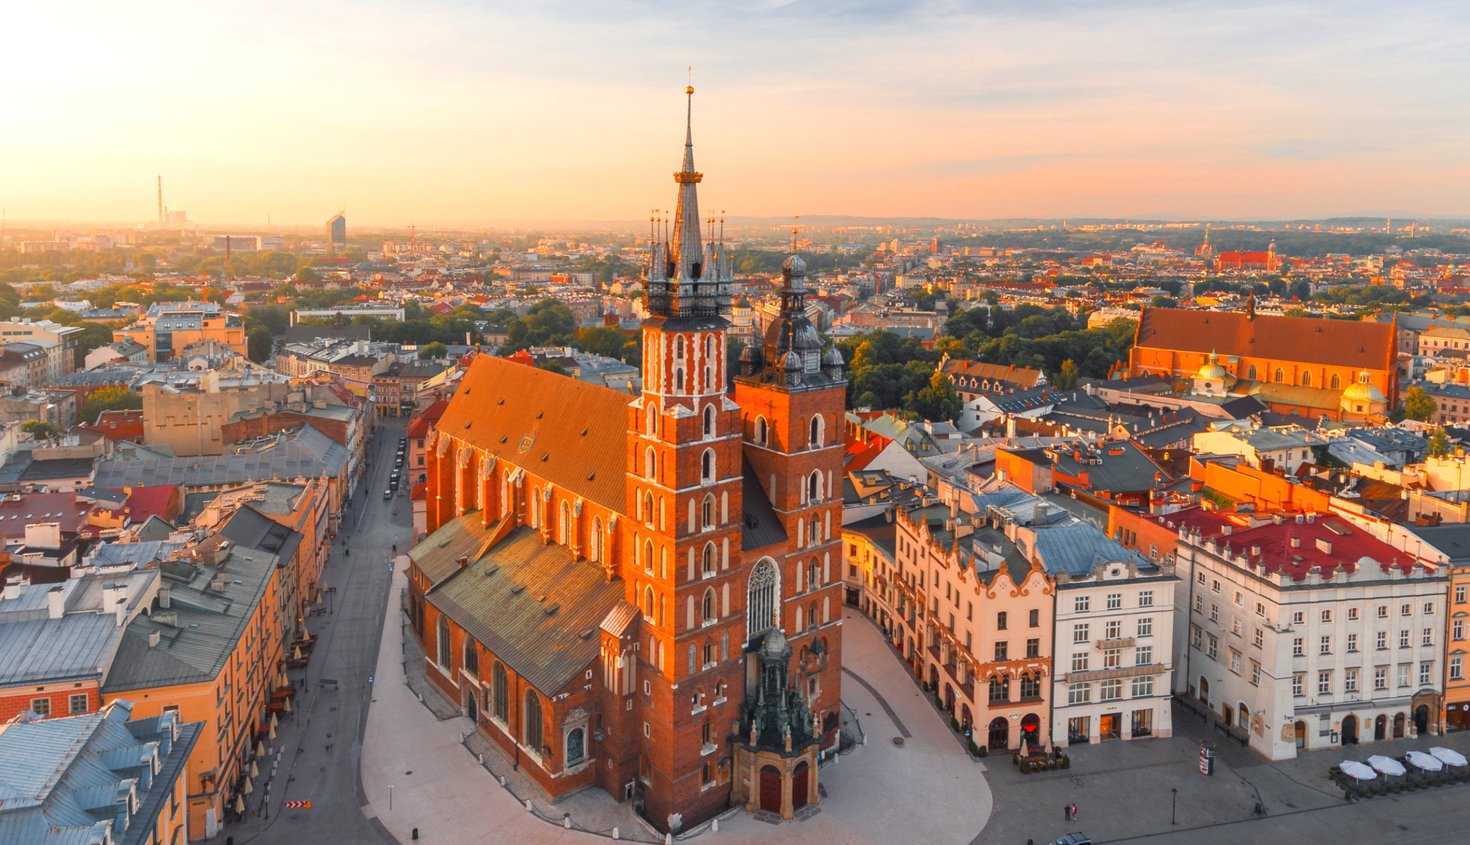 Krakow – BPO Hub in Eastern Europe